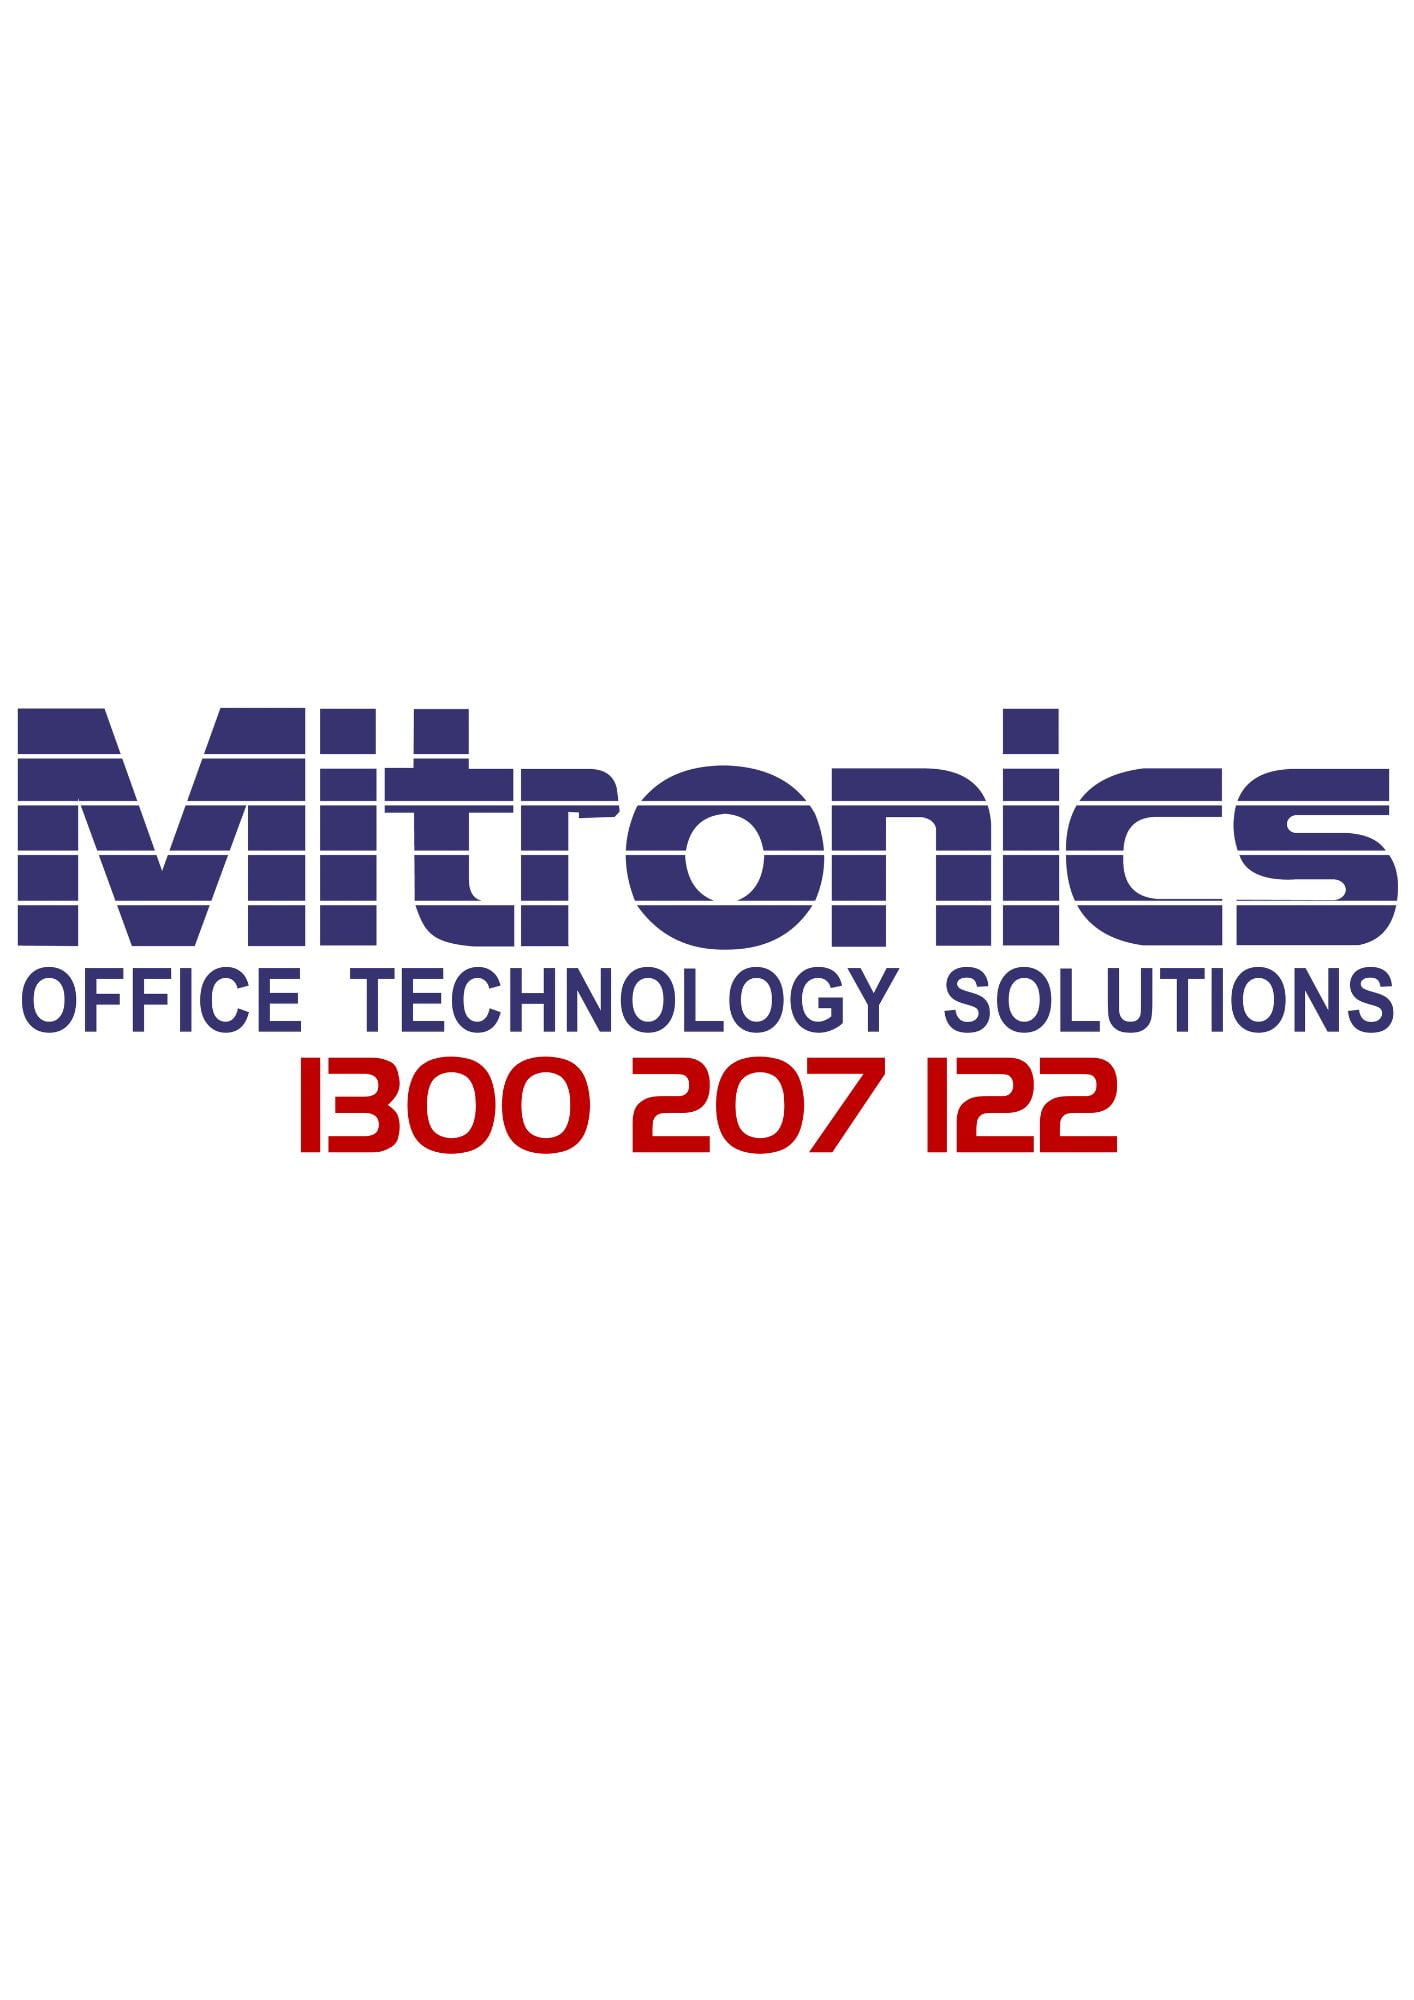 Mitronics Logo